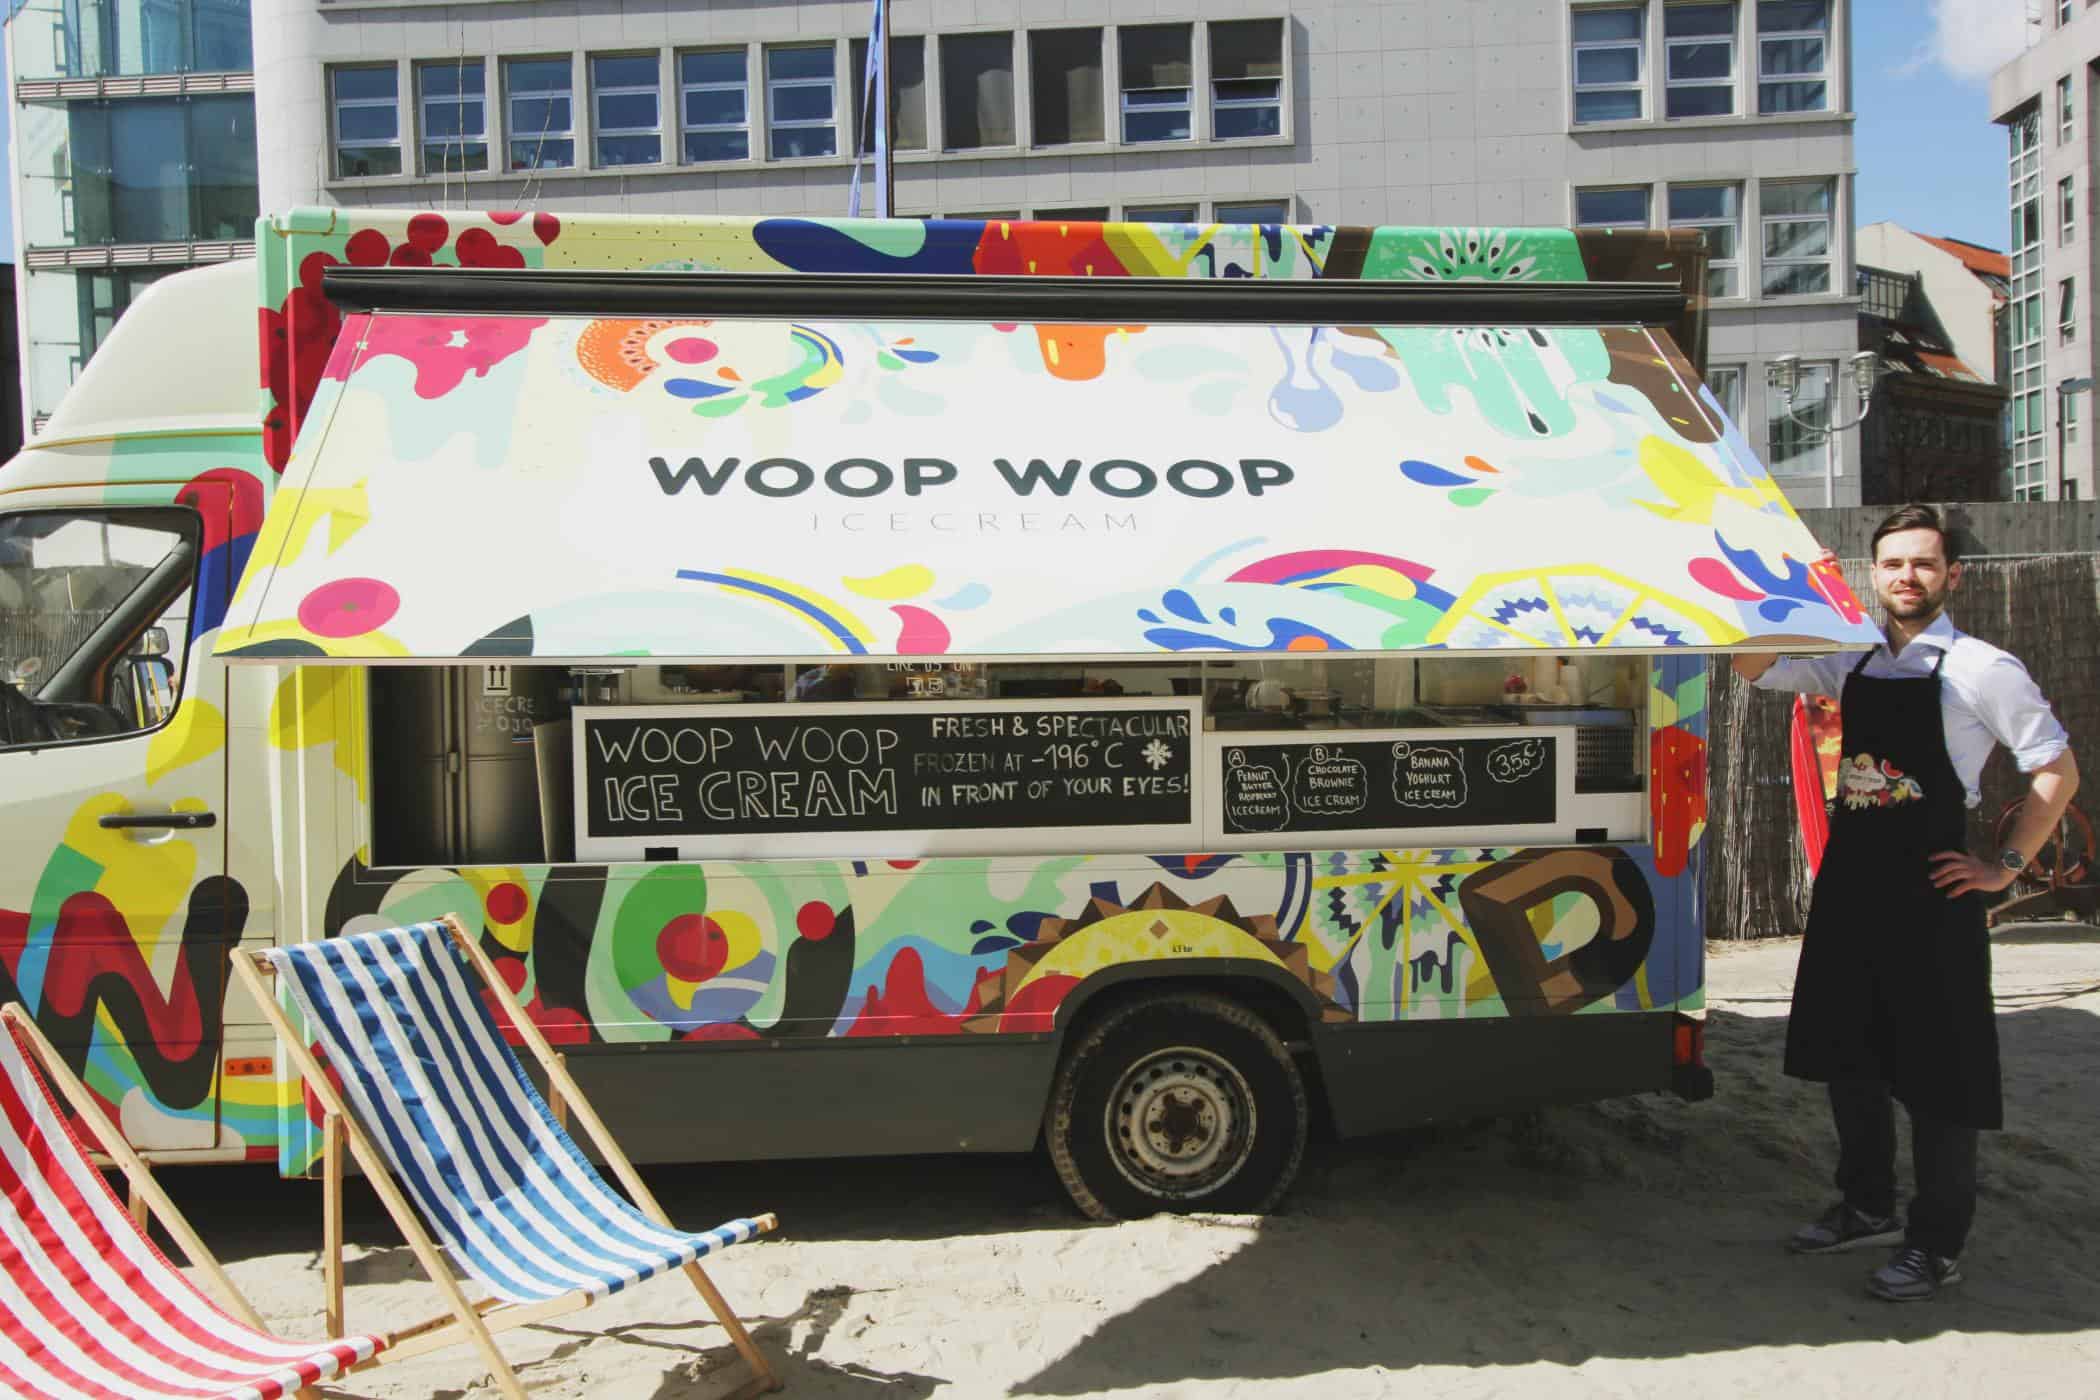 Woop Woop Icecream Truck - streetfood, konzepte, gastronomie Philipp Niegisch, Woop Woop Ice Cream: „Am Ende geht es um das Miteinander von Menschen“